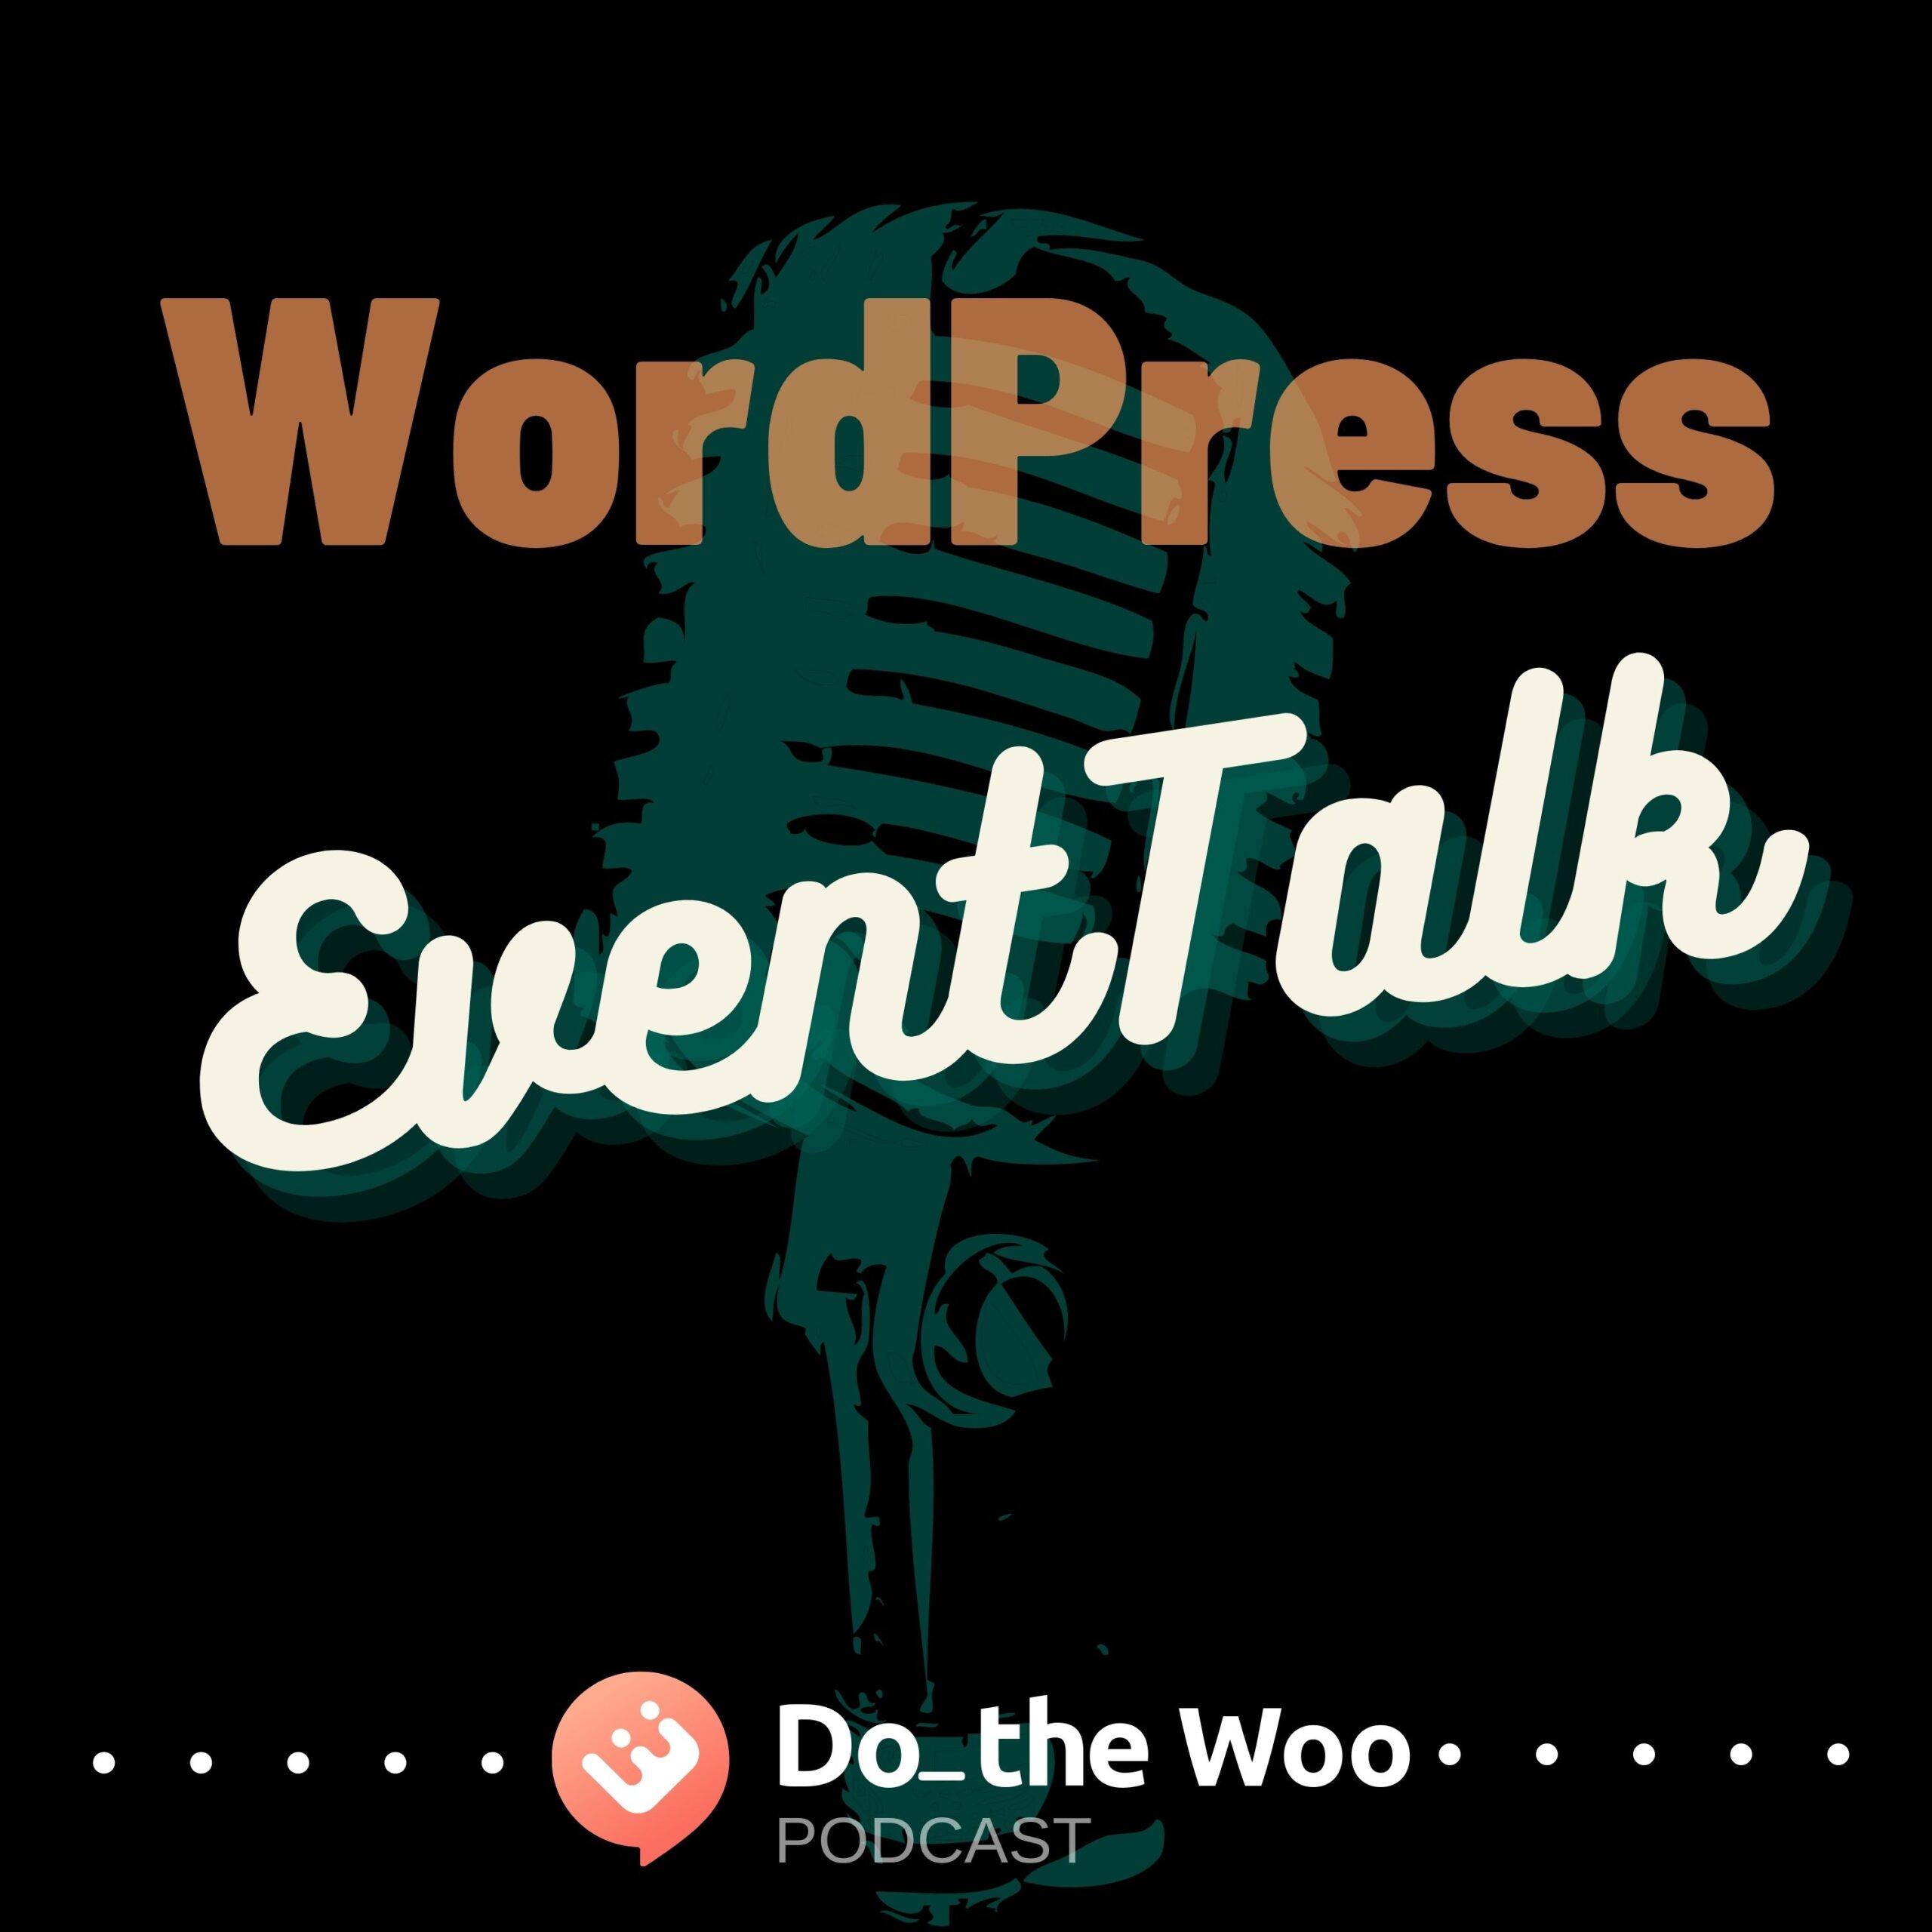 WordPress Event Talk